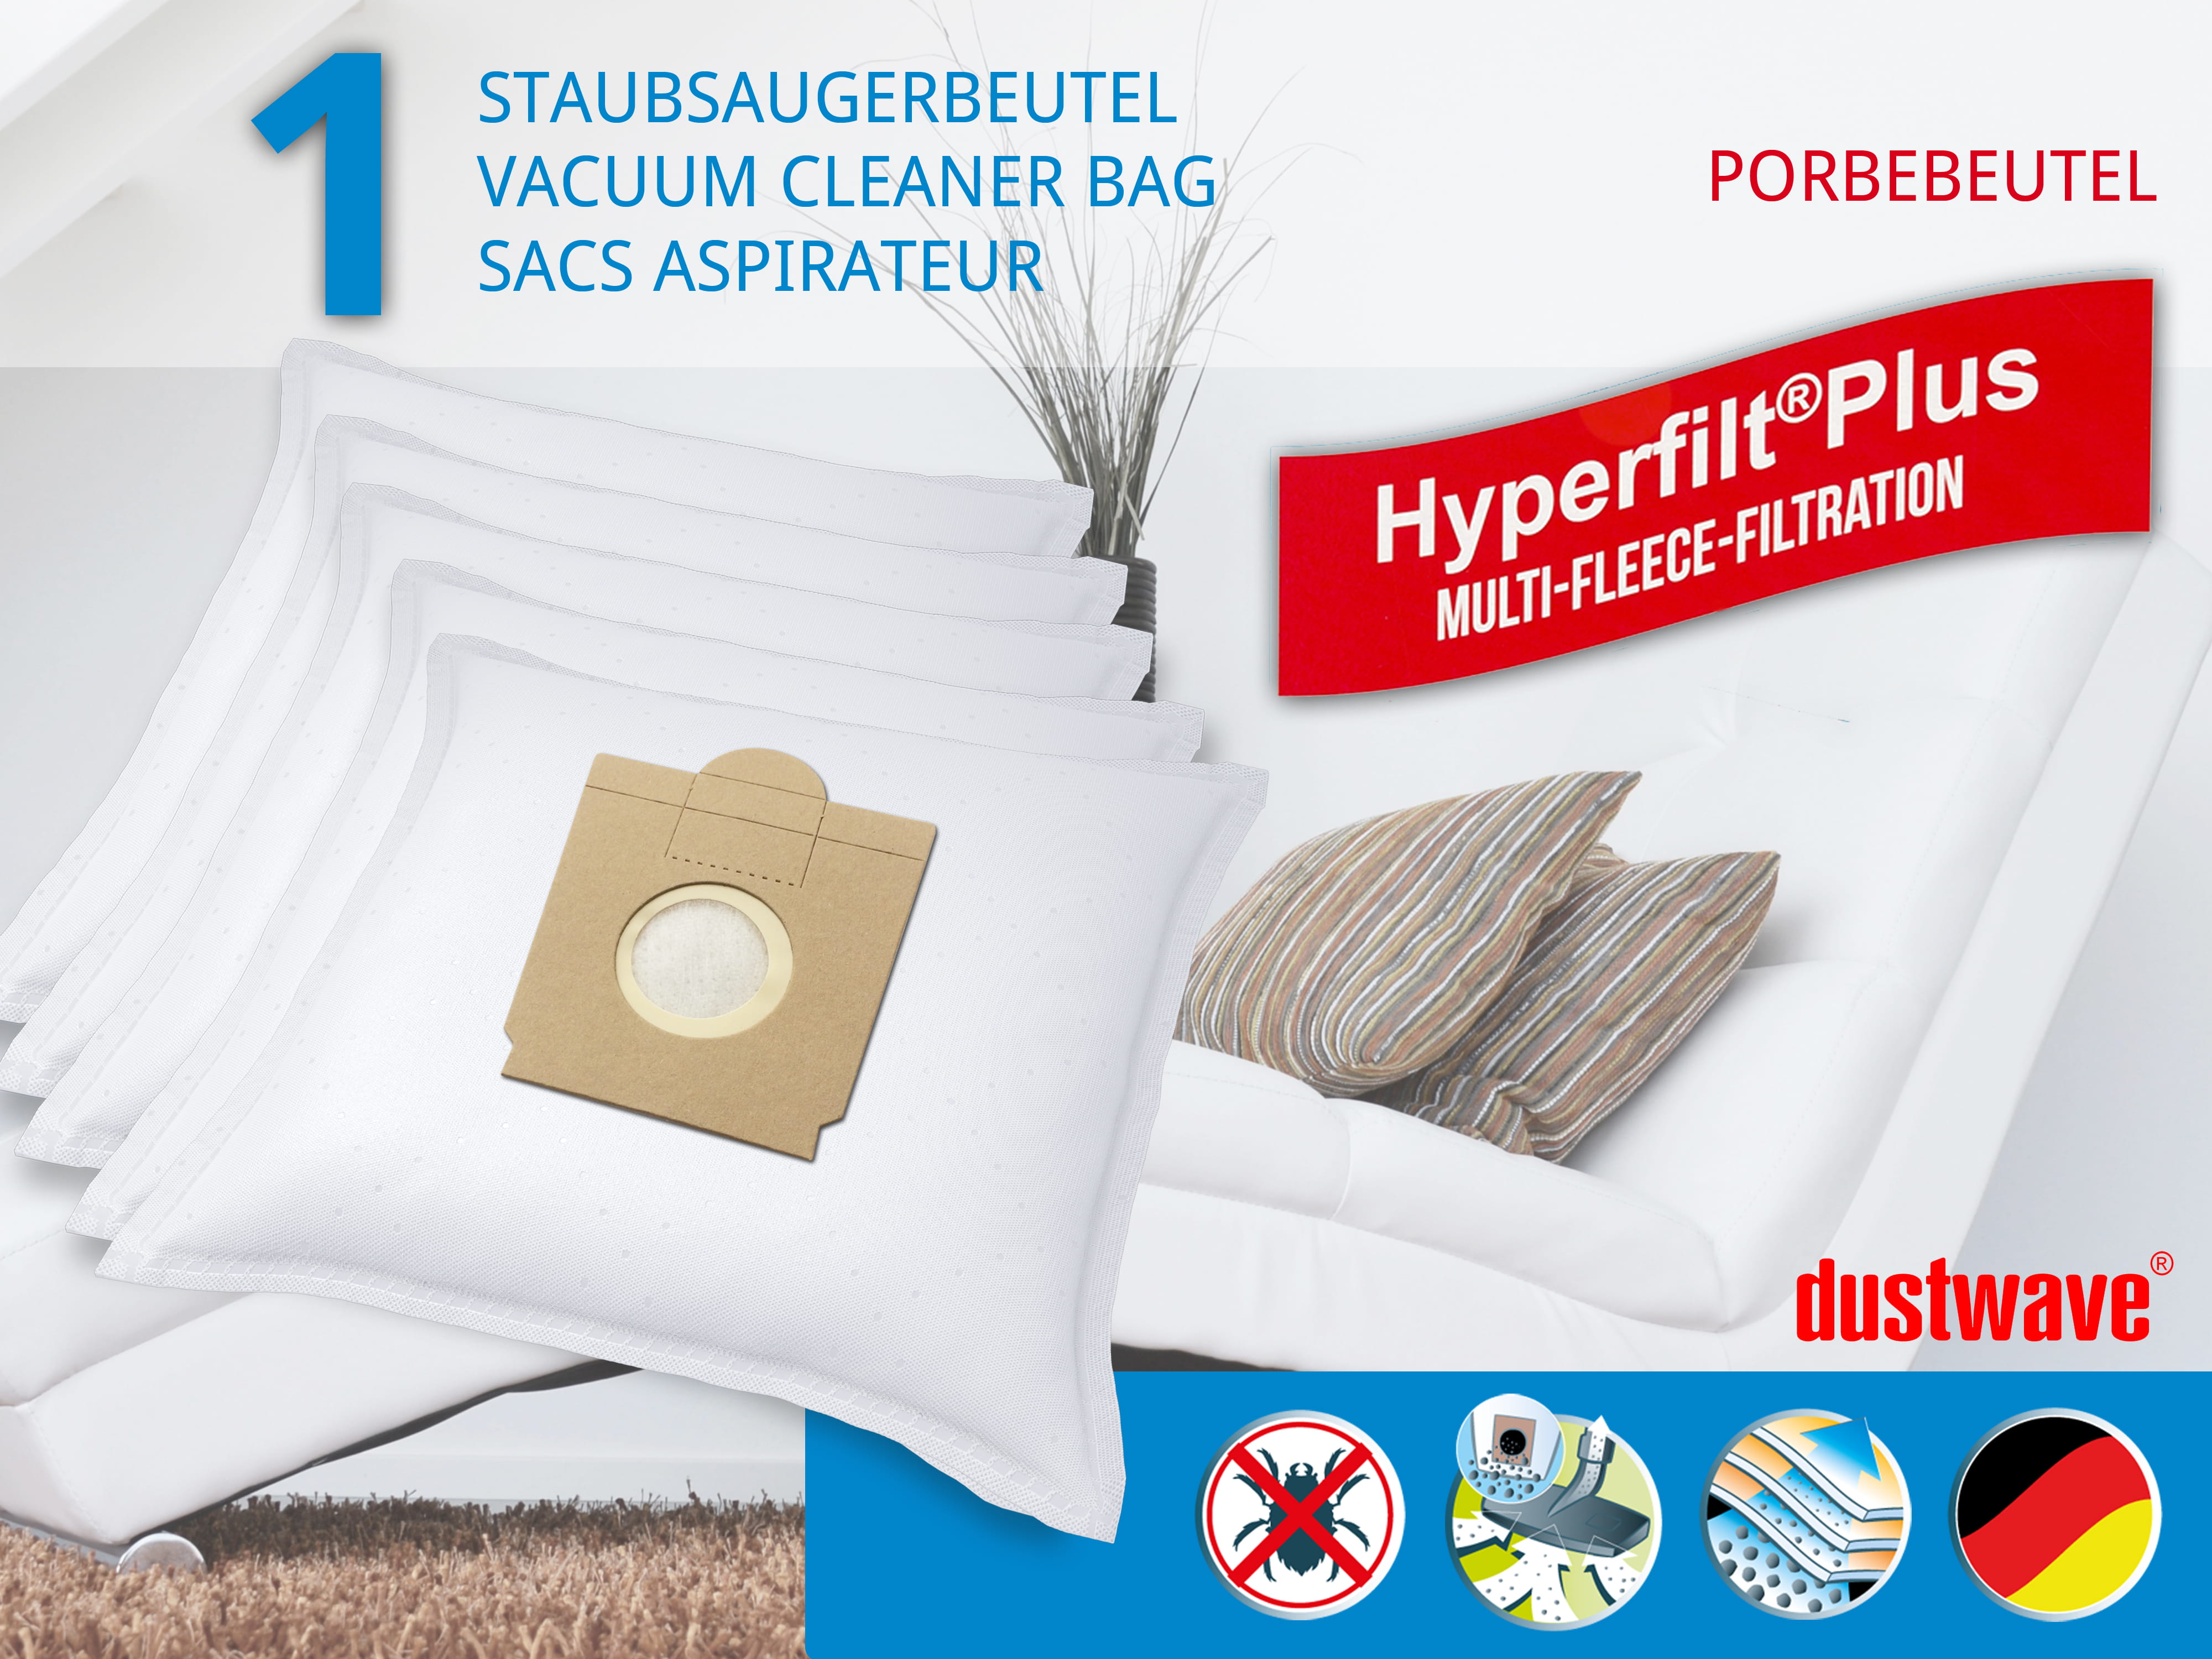 Dustwave® 1 Staubsaugerbeutel für Baur 340.895 / 340-895 - hocheffizient mit Hygieneverschluss - Made in Germany